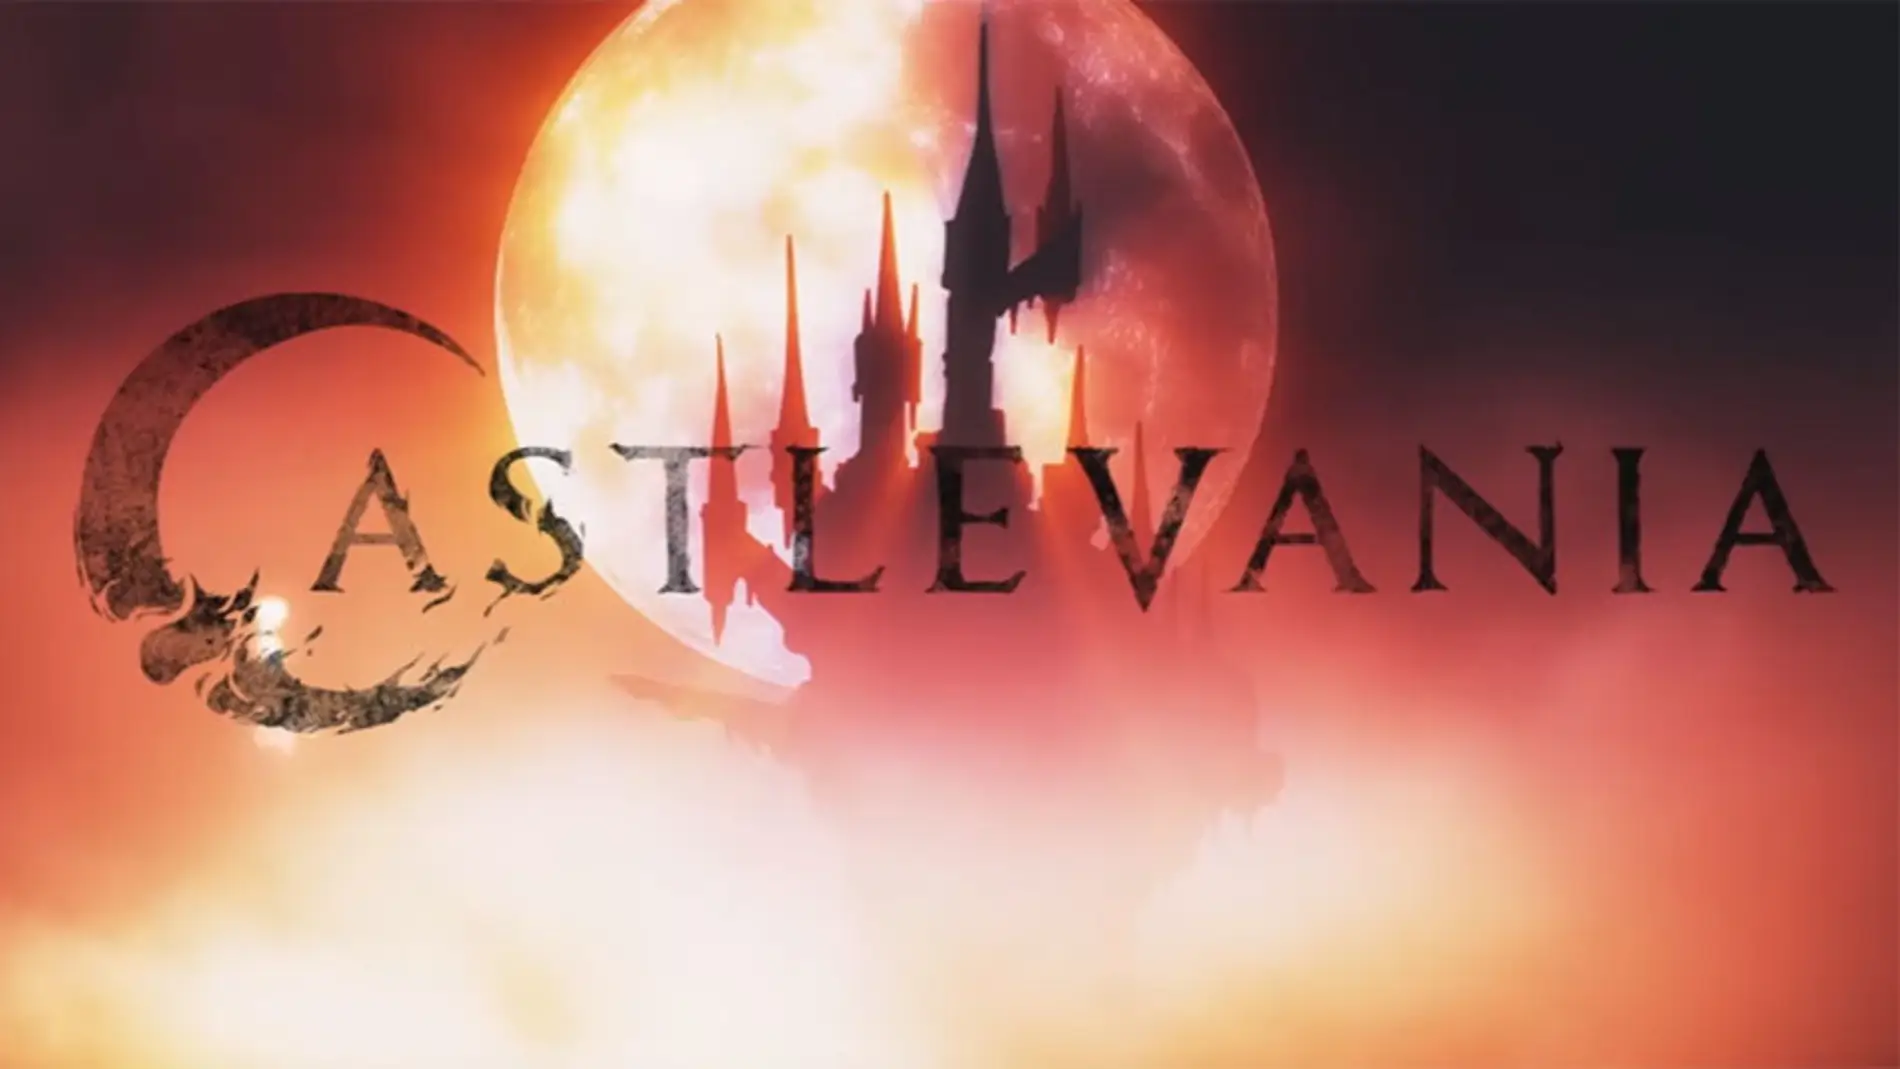 'Castlevania', la nueva serie de Netflix